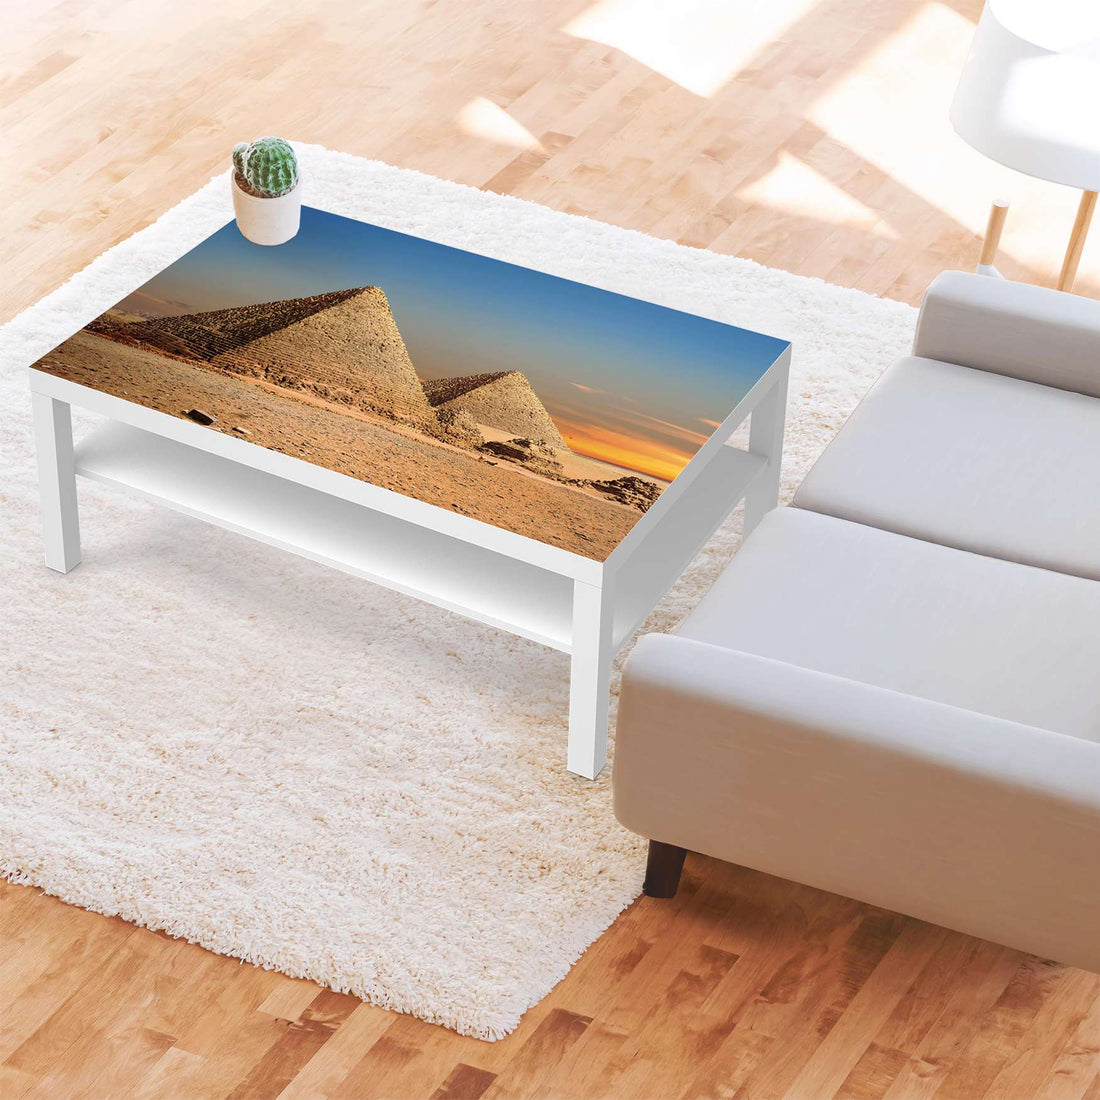 Klebefolie Pyramids - IKEA Lack Tisch 118x78 cm - Wohnzimmer